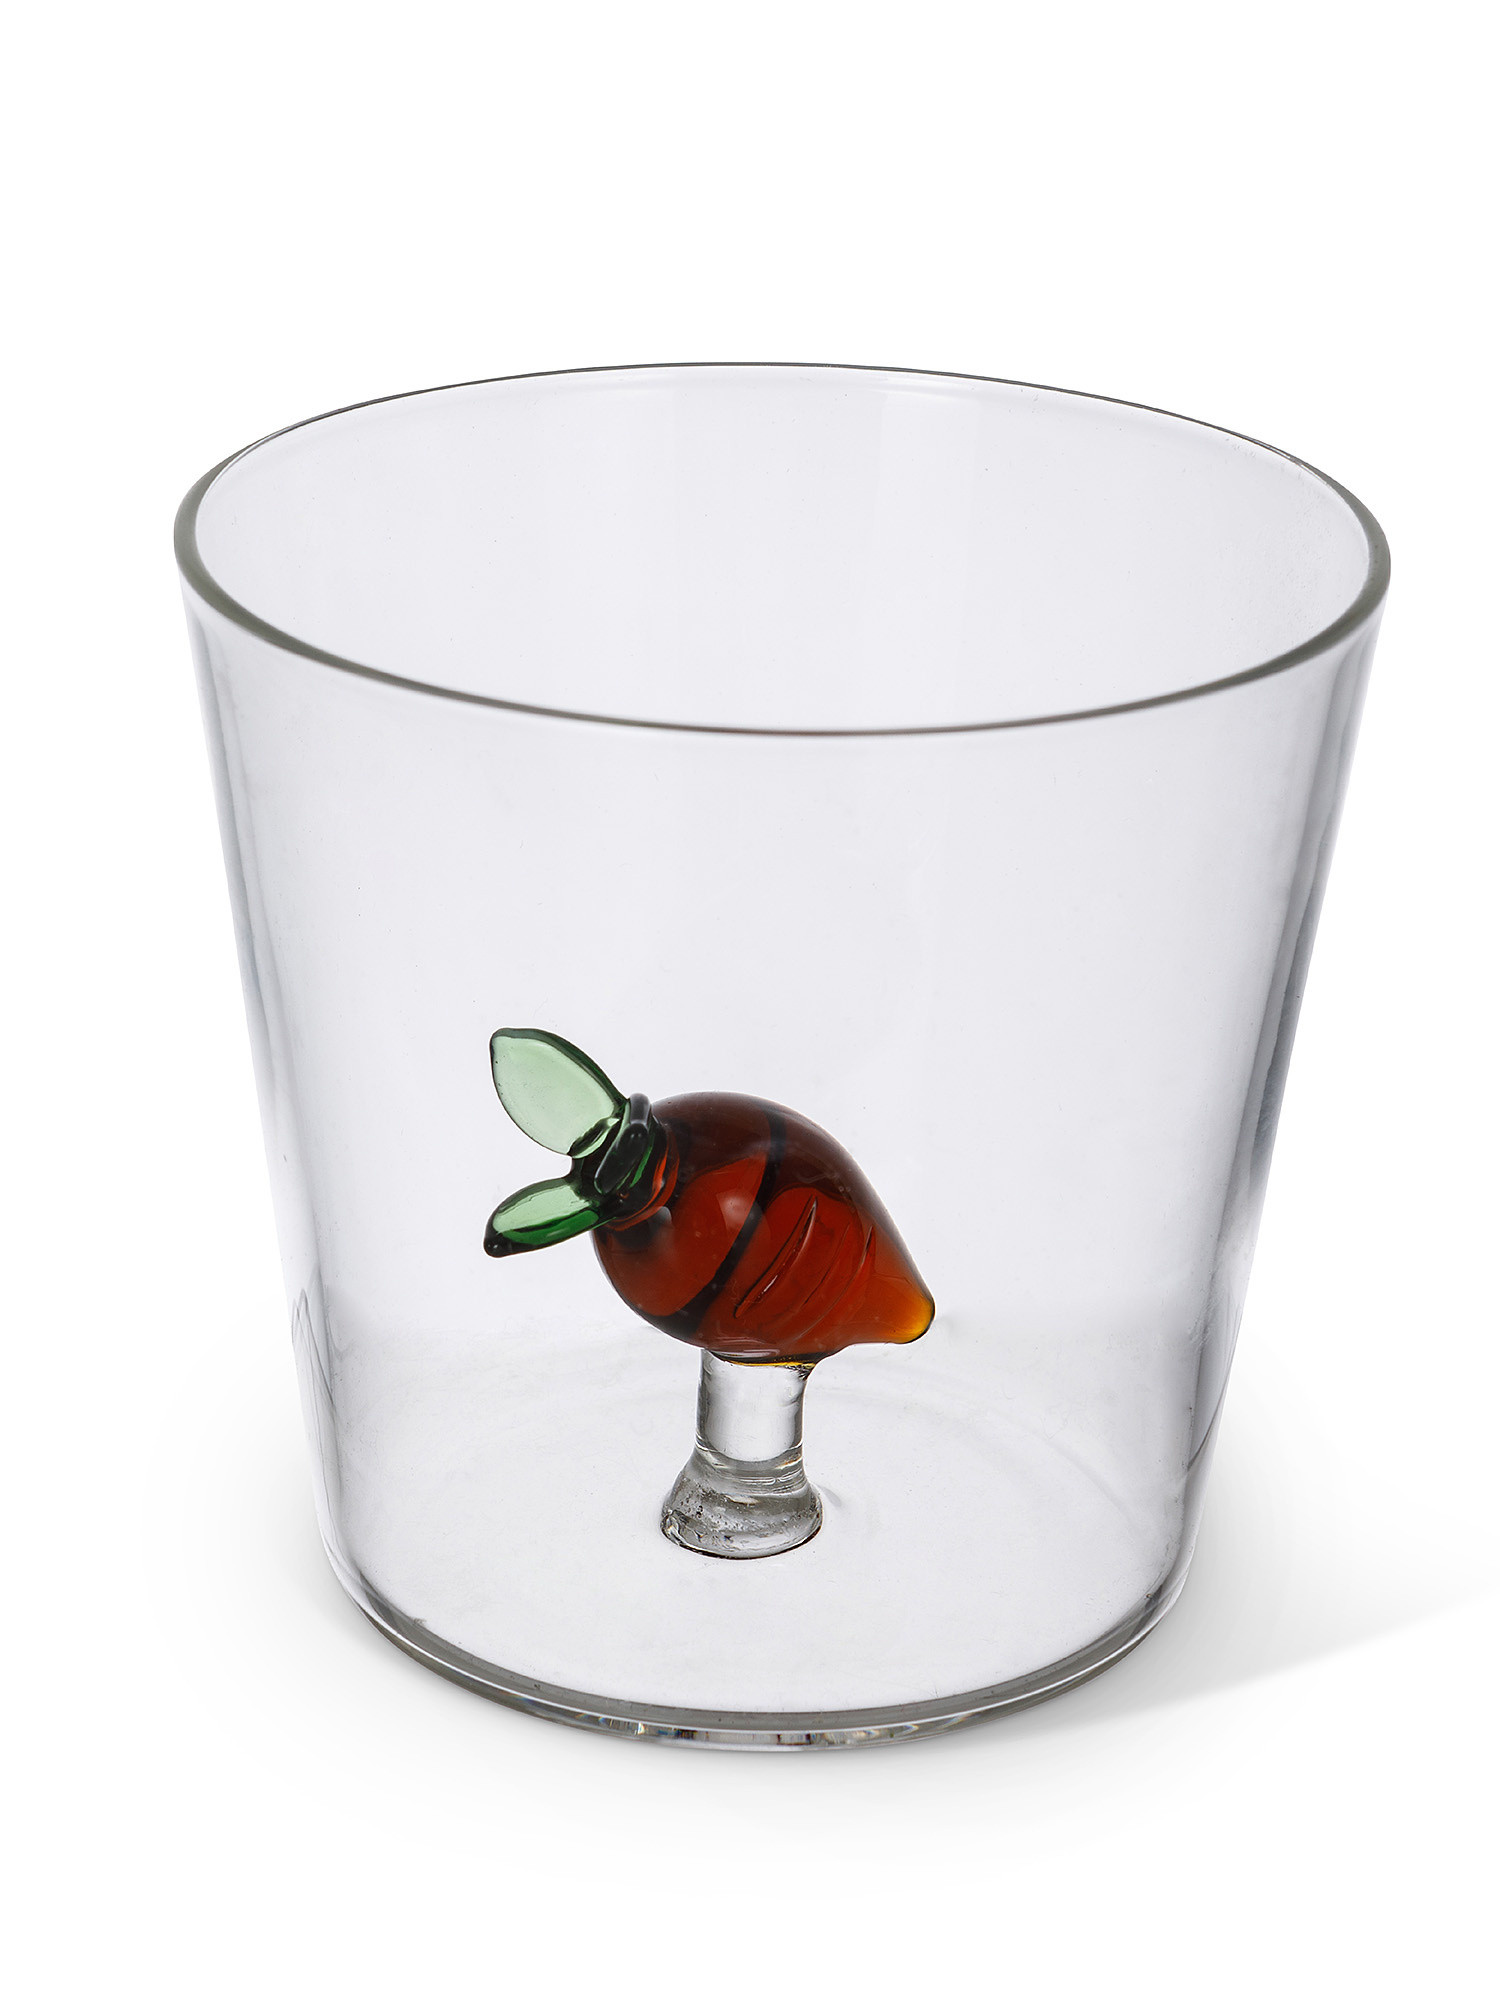 Bicchiere vetro borosilicato dettaglio carota, Trasparente, large image number 1